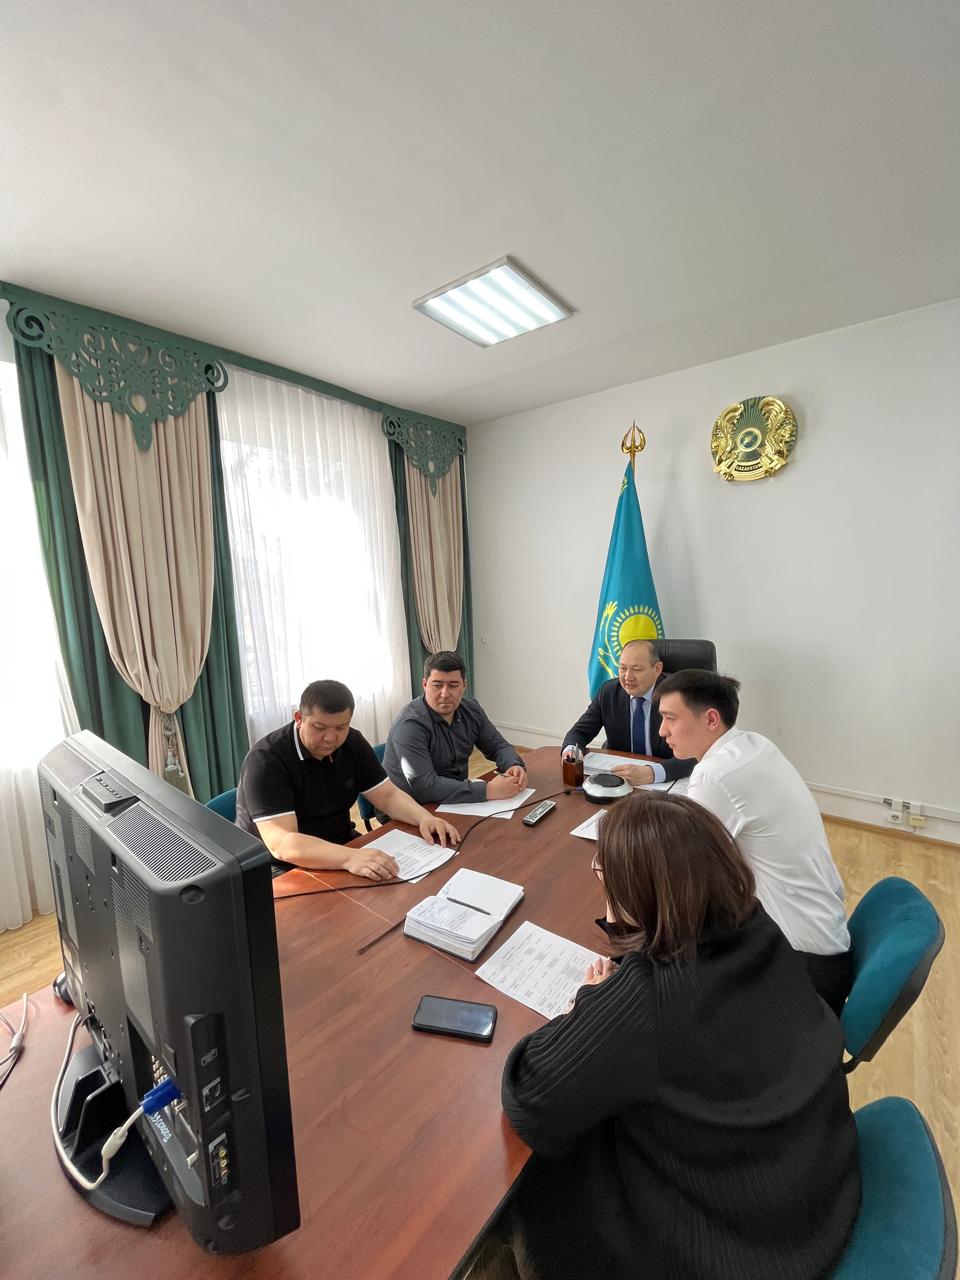 Проведено совещание с членами антитеррористической комиссии Павлодарского района где были обсуждены проблемные и насущные вопросы